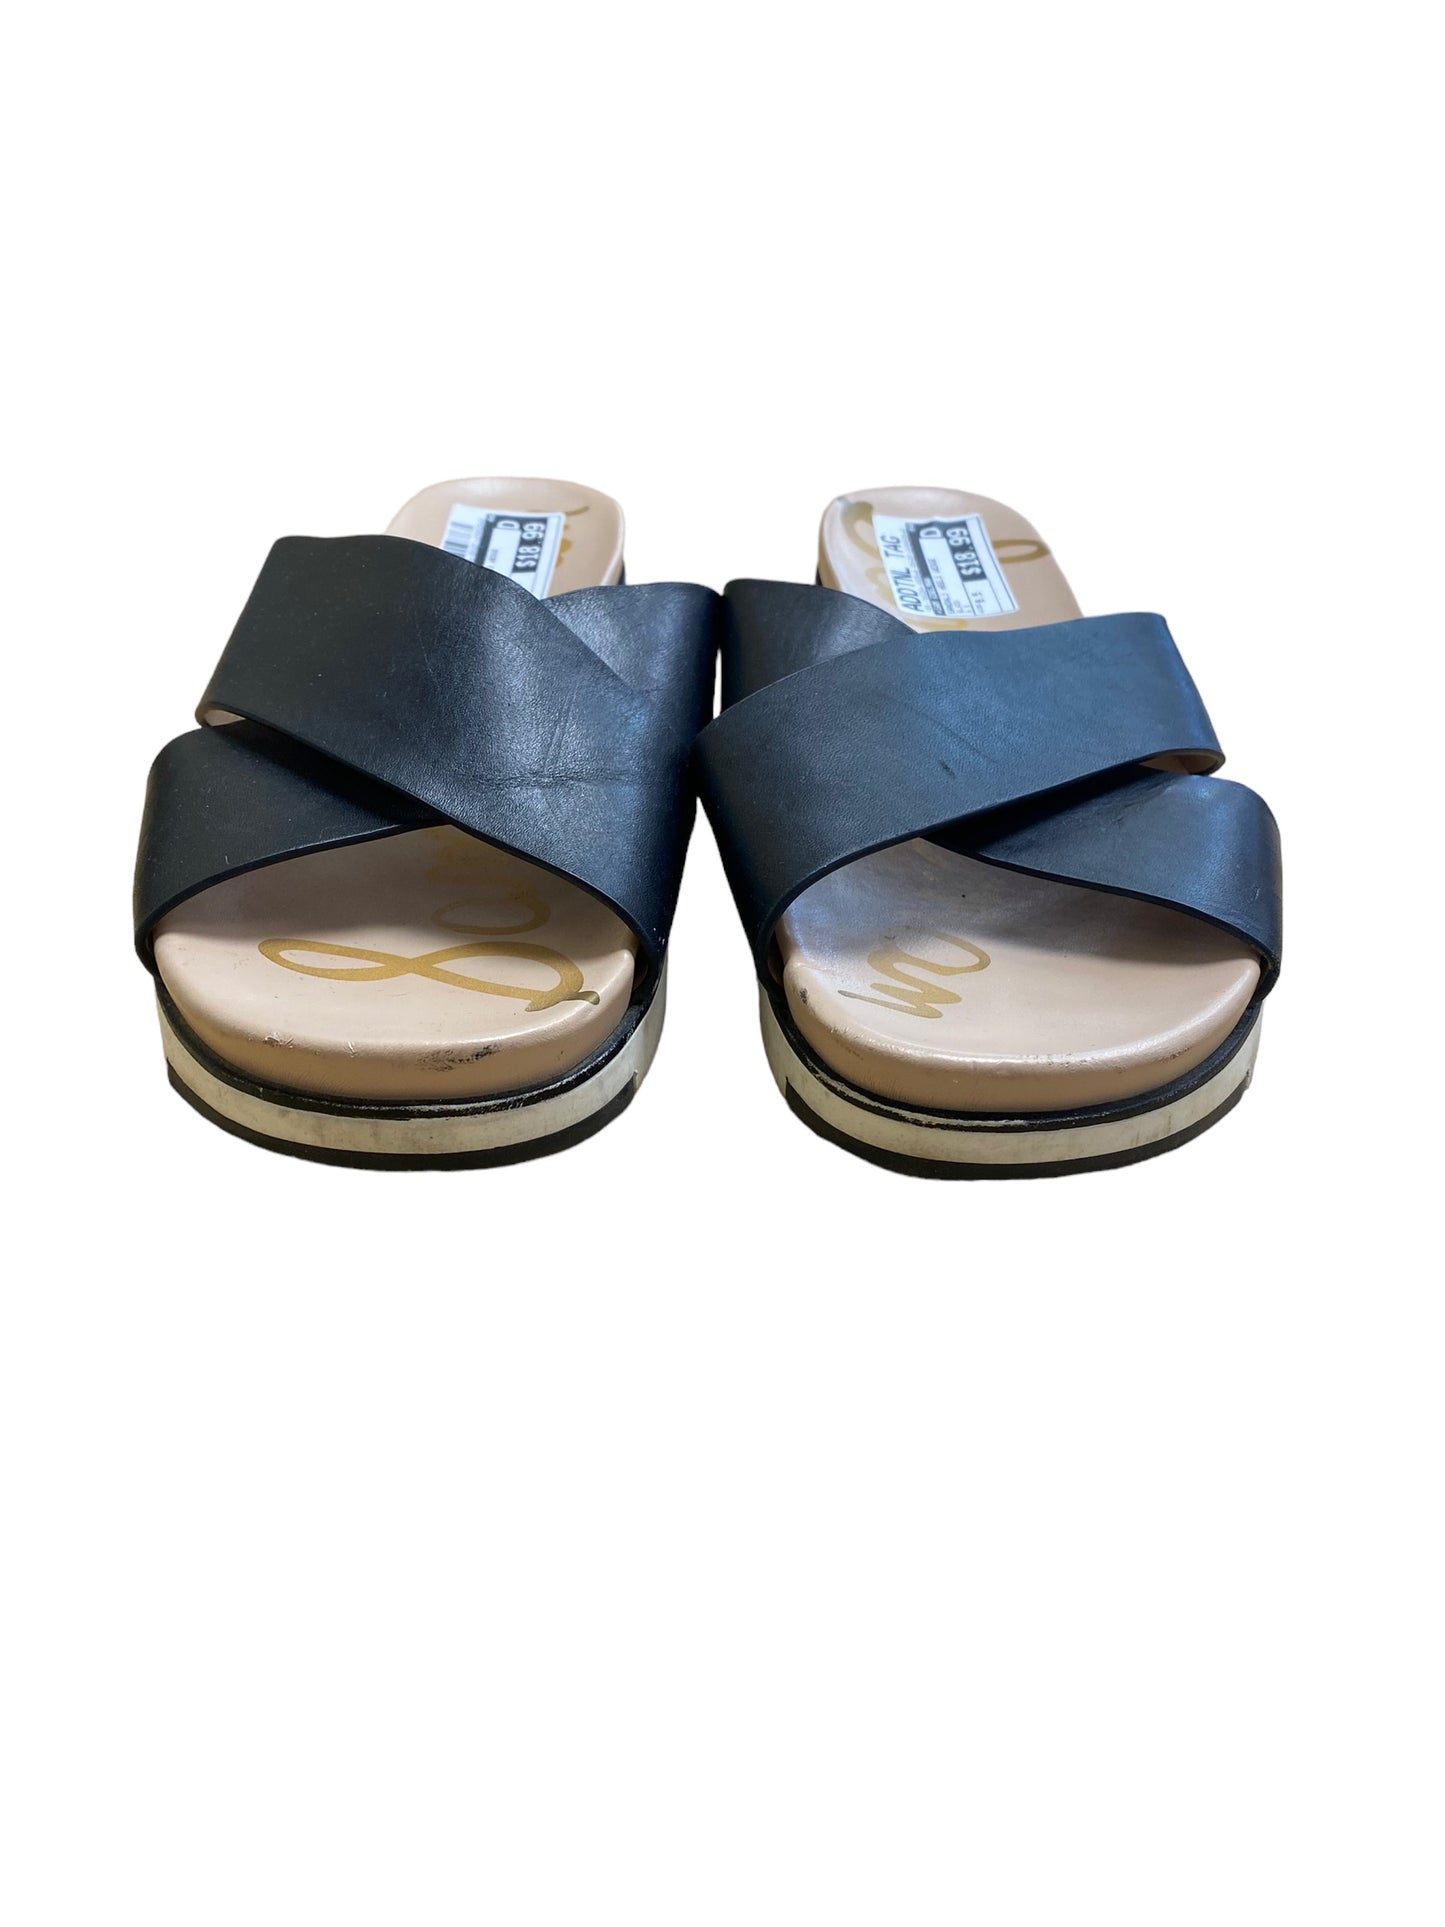 Sandals Heels Wedge By Sam Edelman  Size: 9.5